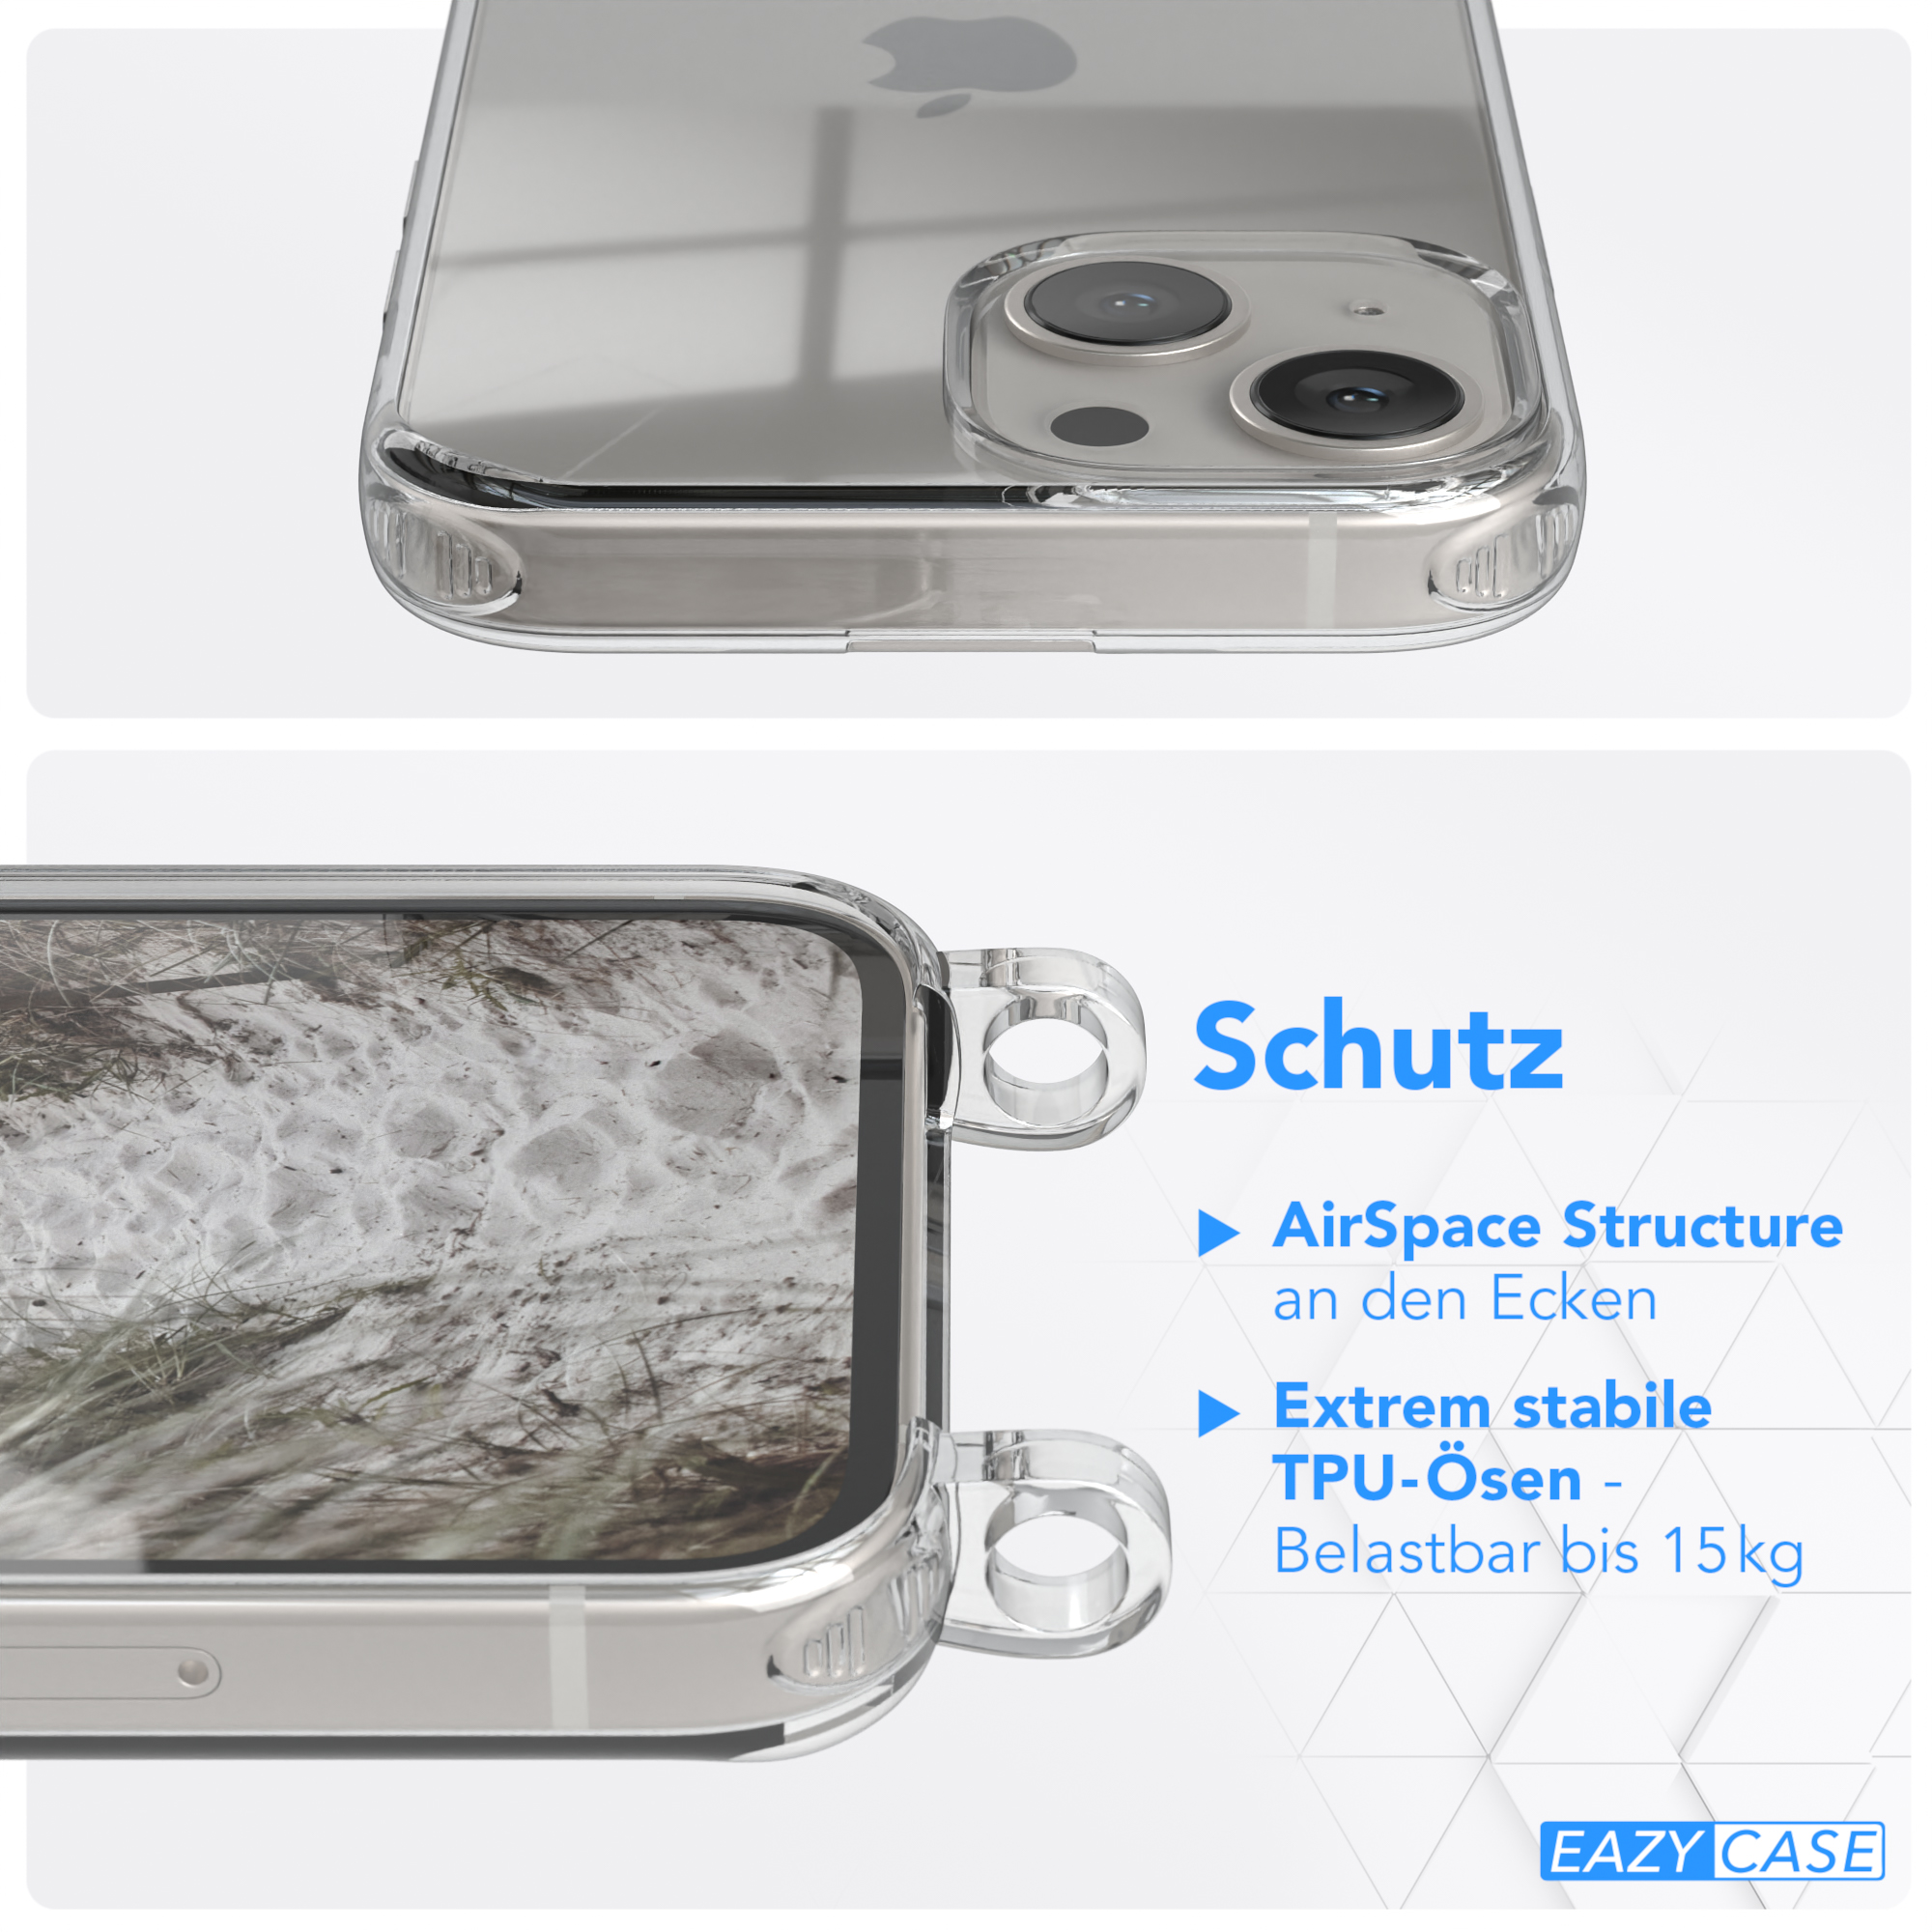 / Mini, iPhone breiter Taupe Apple, Umhängetasche, Beige CASE EAZY 13 mit Handyhülle Karabiner, Grau Transparente + Kordel